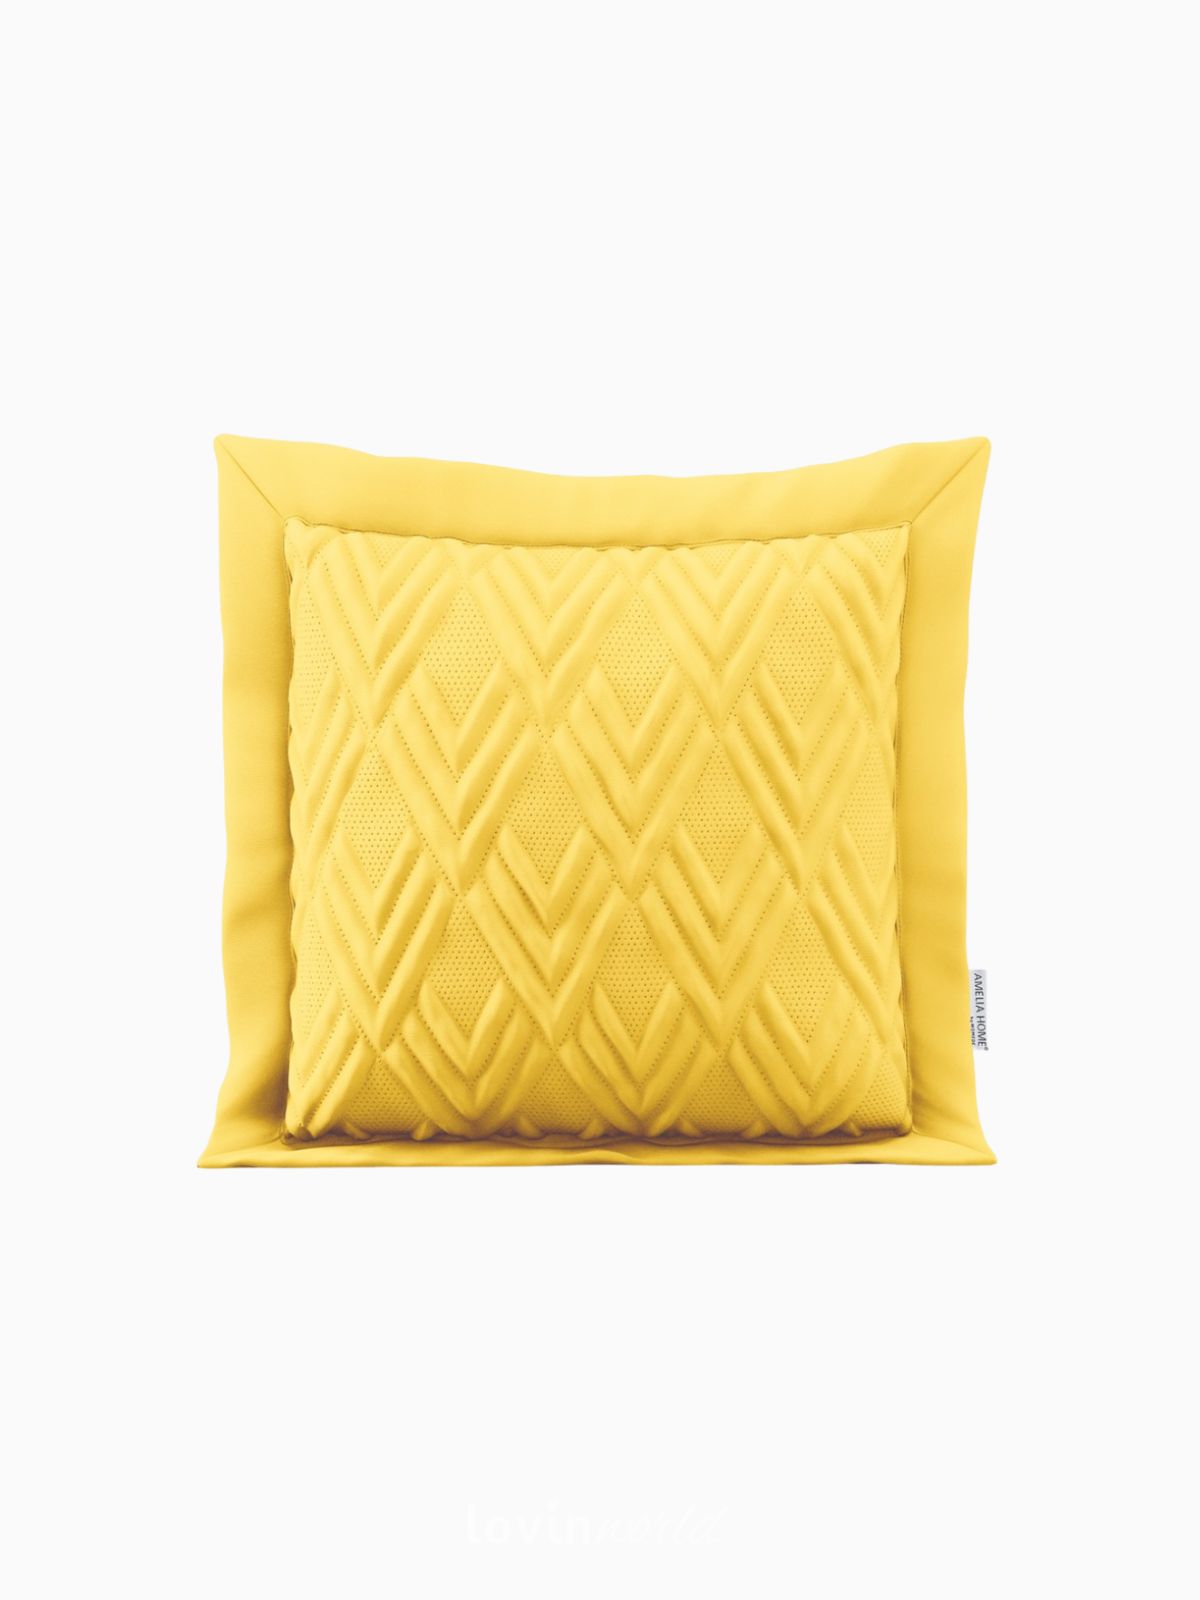 Cuscino decorativo Ophelia in colore giallo 45x45 cm.-1